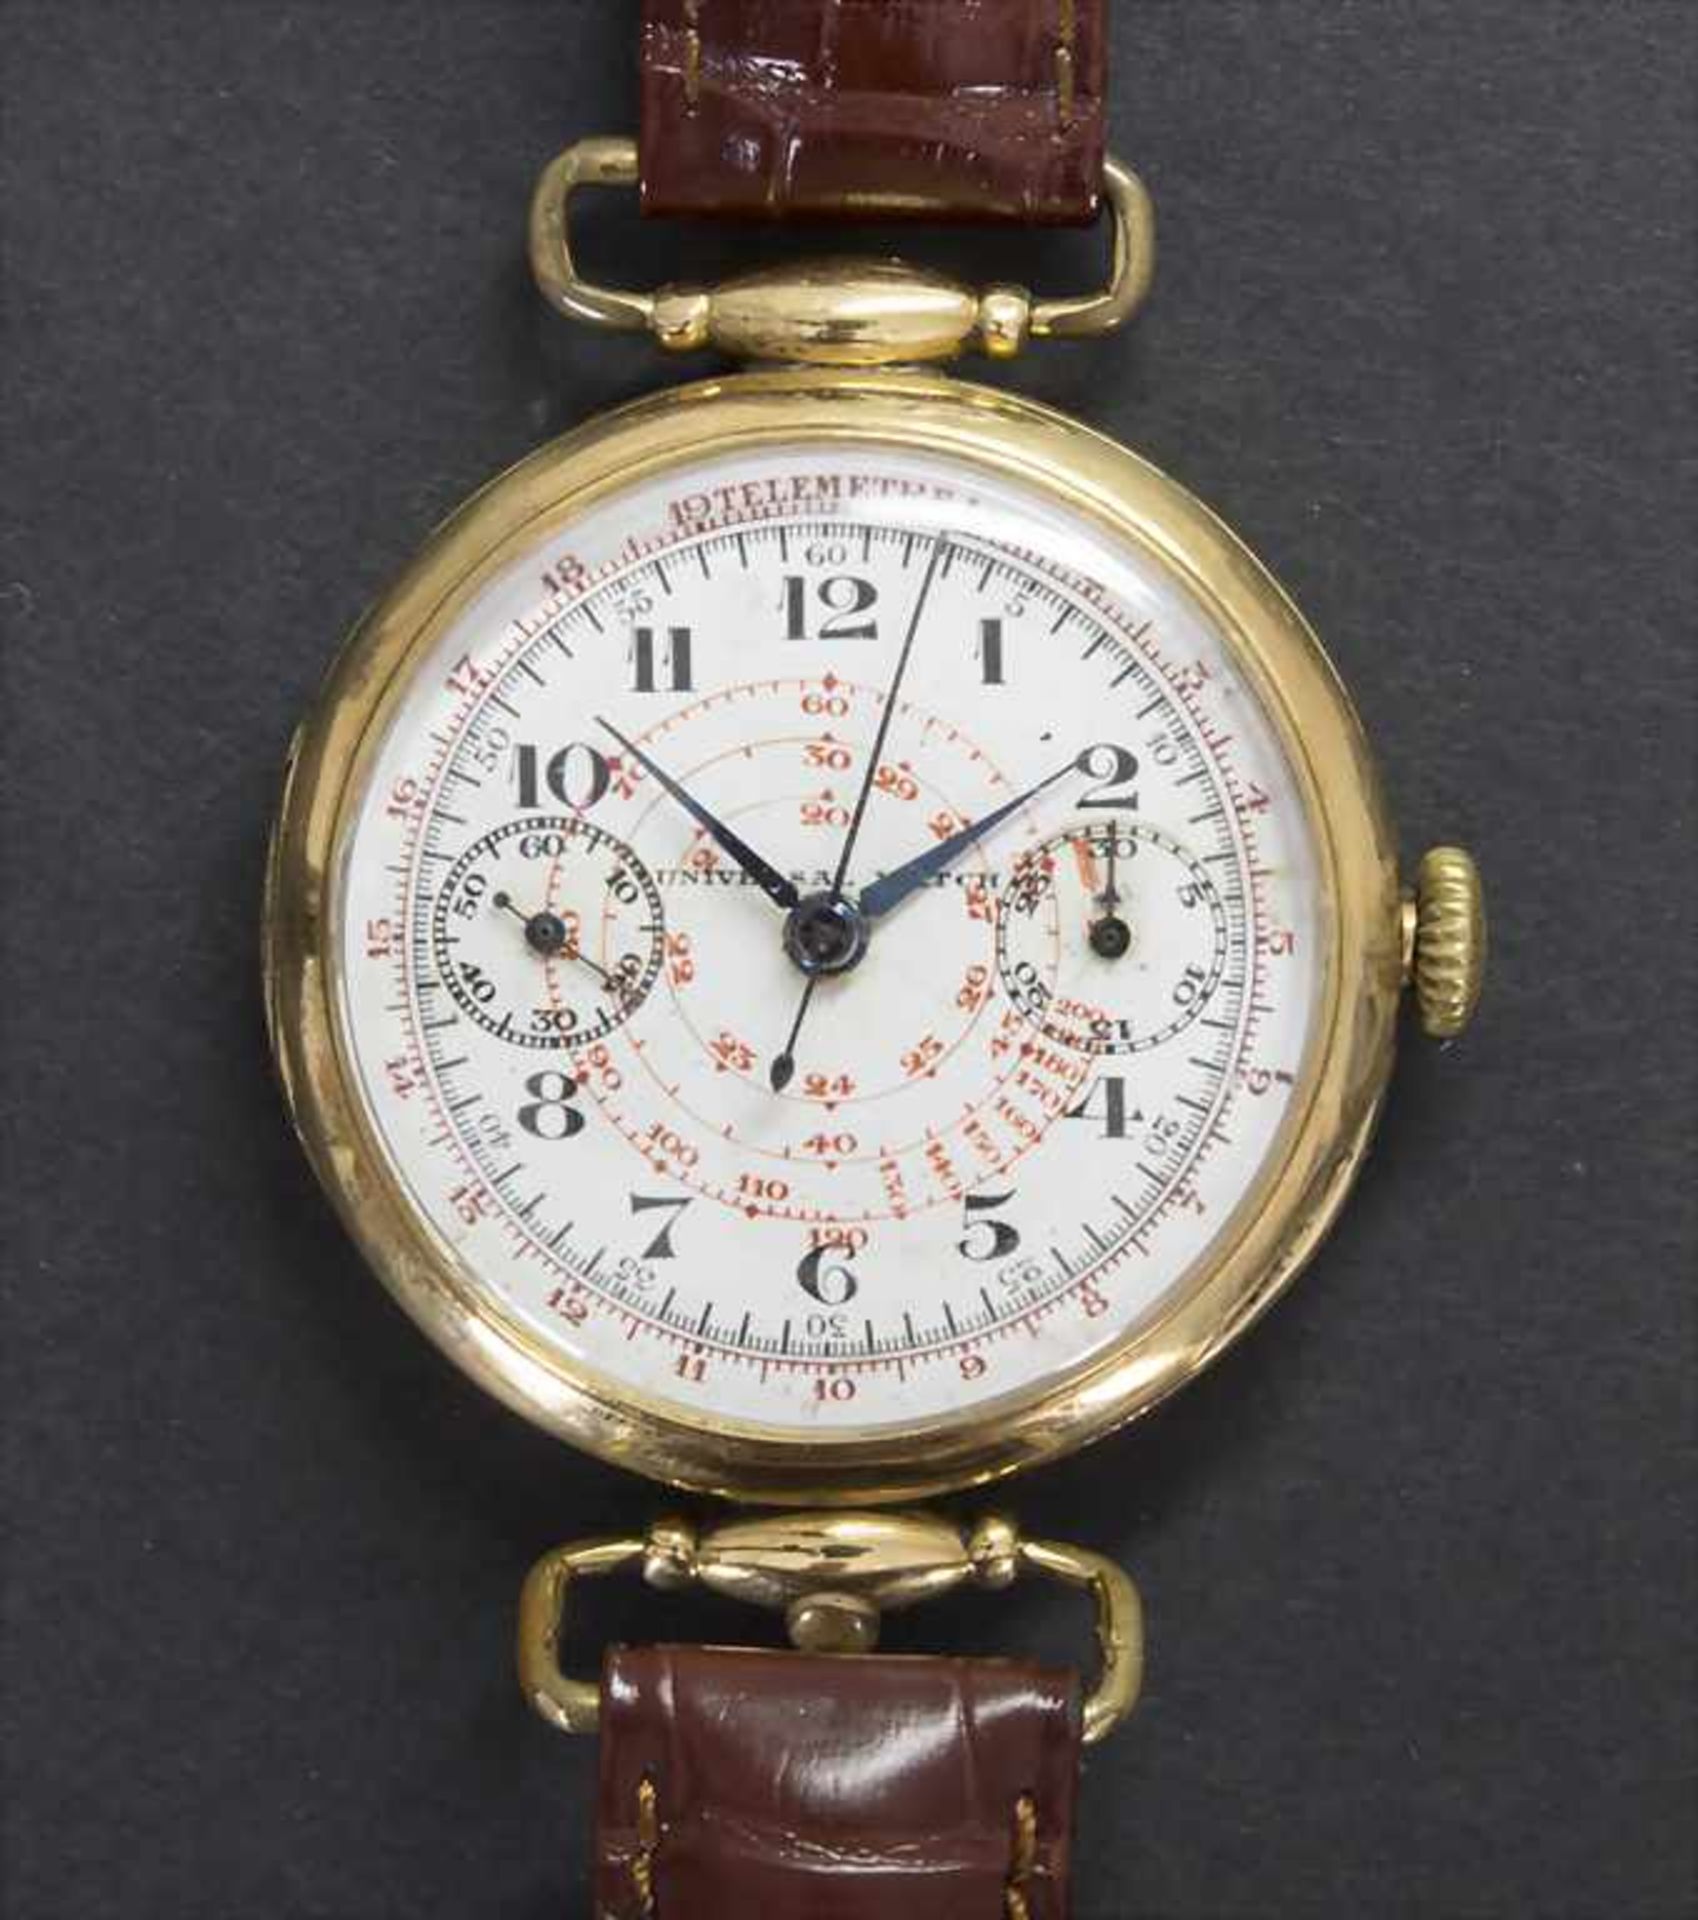 Chronograph, Universal Géneve, Schweiz, um 1930Gehäuse: 18 Kt 750/000 GG, Nr. 512410,Zifferblatt: